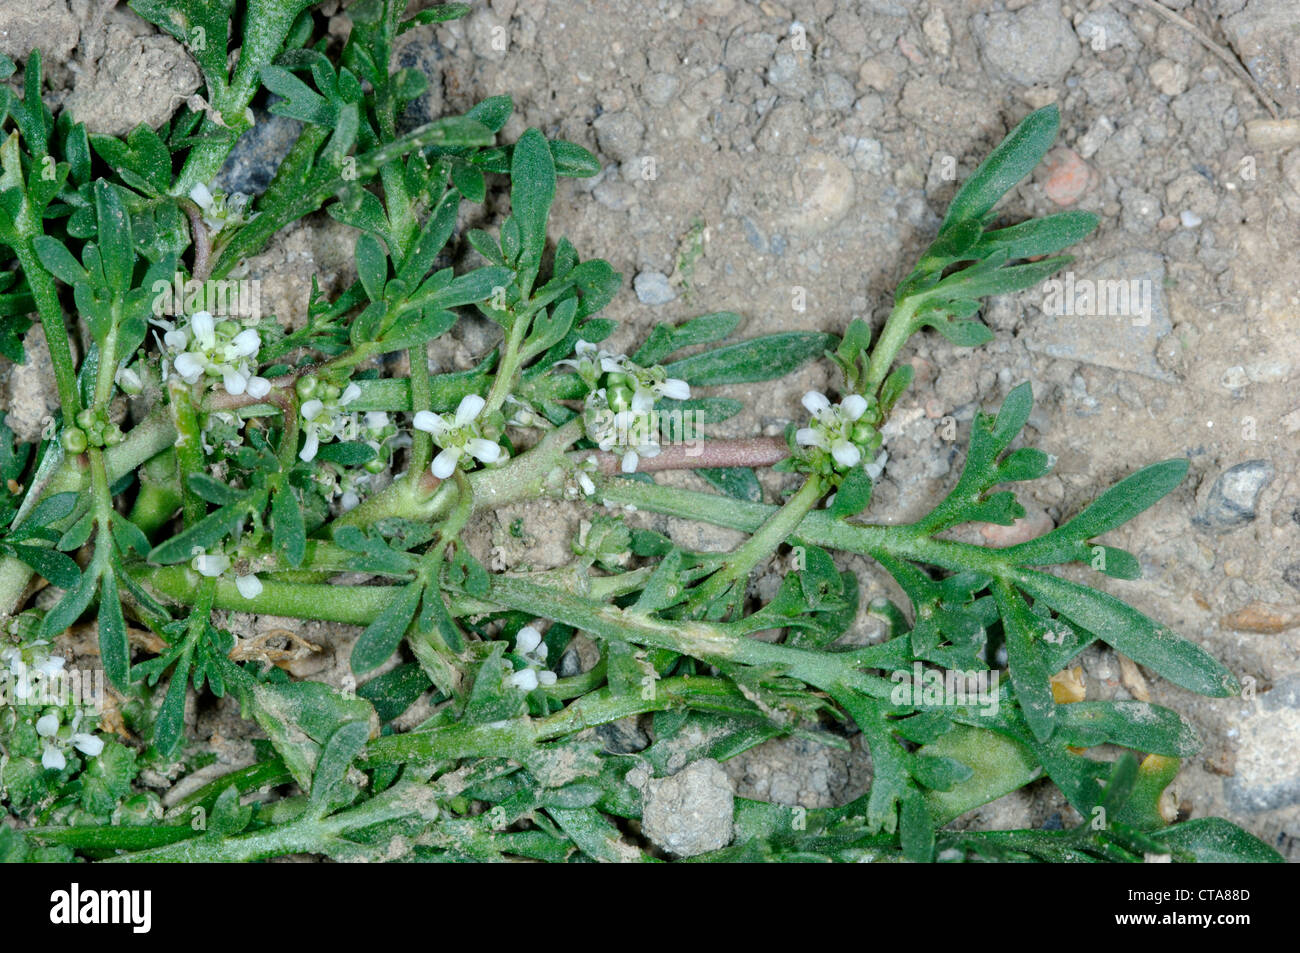 SWINE-CRESS Coronopus squamatus (Brassicaceae) Stock Photo